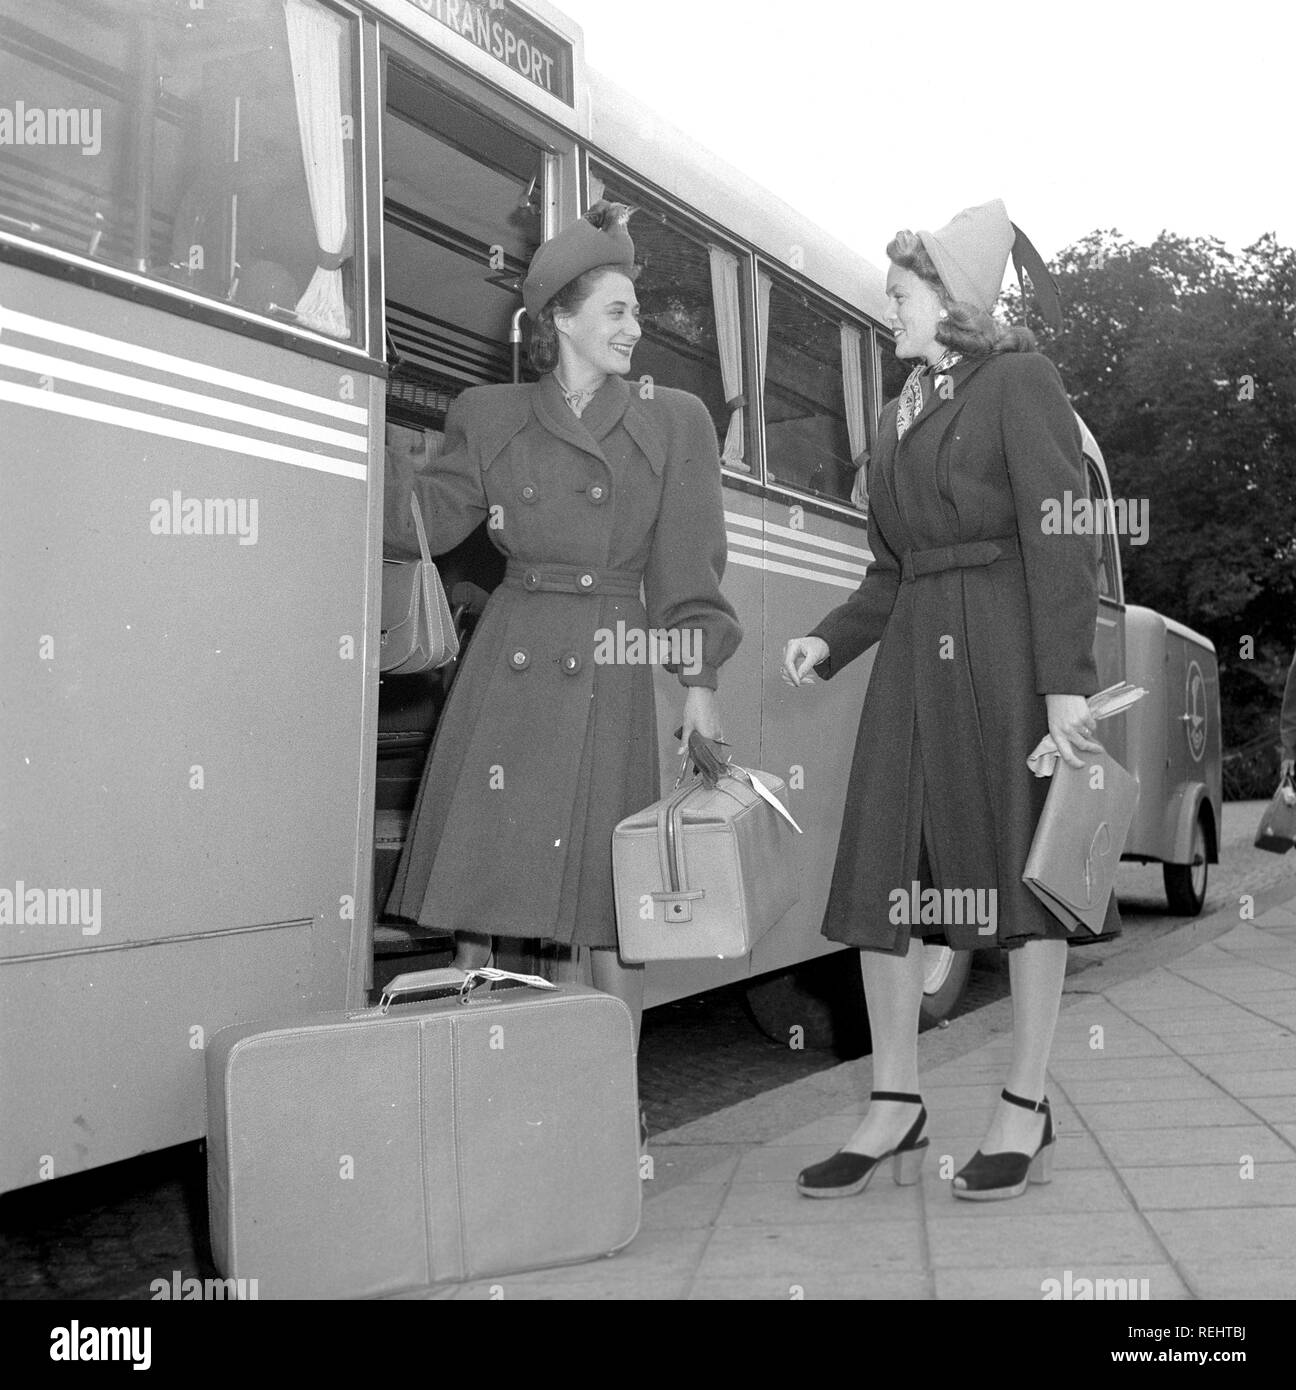 La mode féminine dans les années 40. Une jeune femme en robe typique des années 40, avec chapeau assorti, chaussures, gants et sac à main. Elle descend du bus transportant ses bagages et est accueilli par une amie aussi dans un typique des années 40. Kristoffersson Photo Ref V77-4. Suède 1947 Banque D'Images